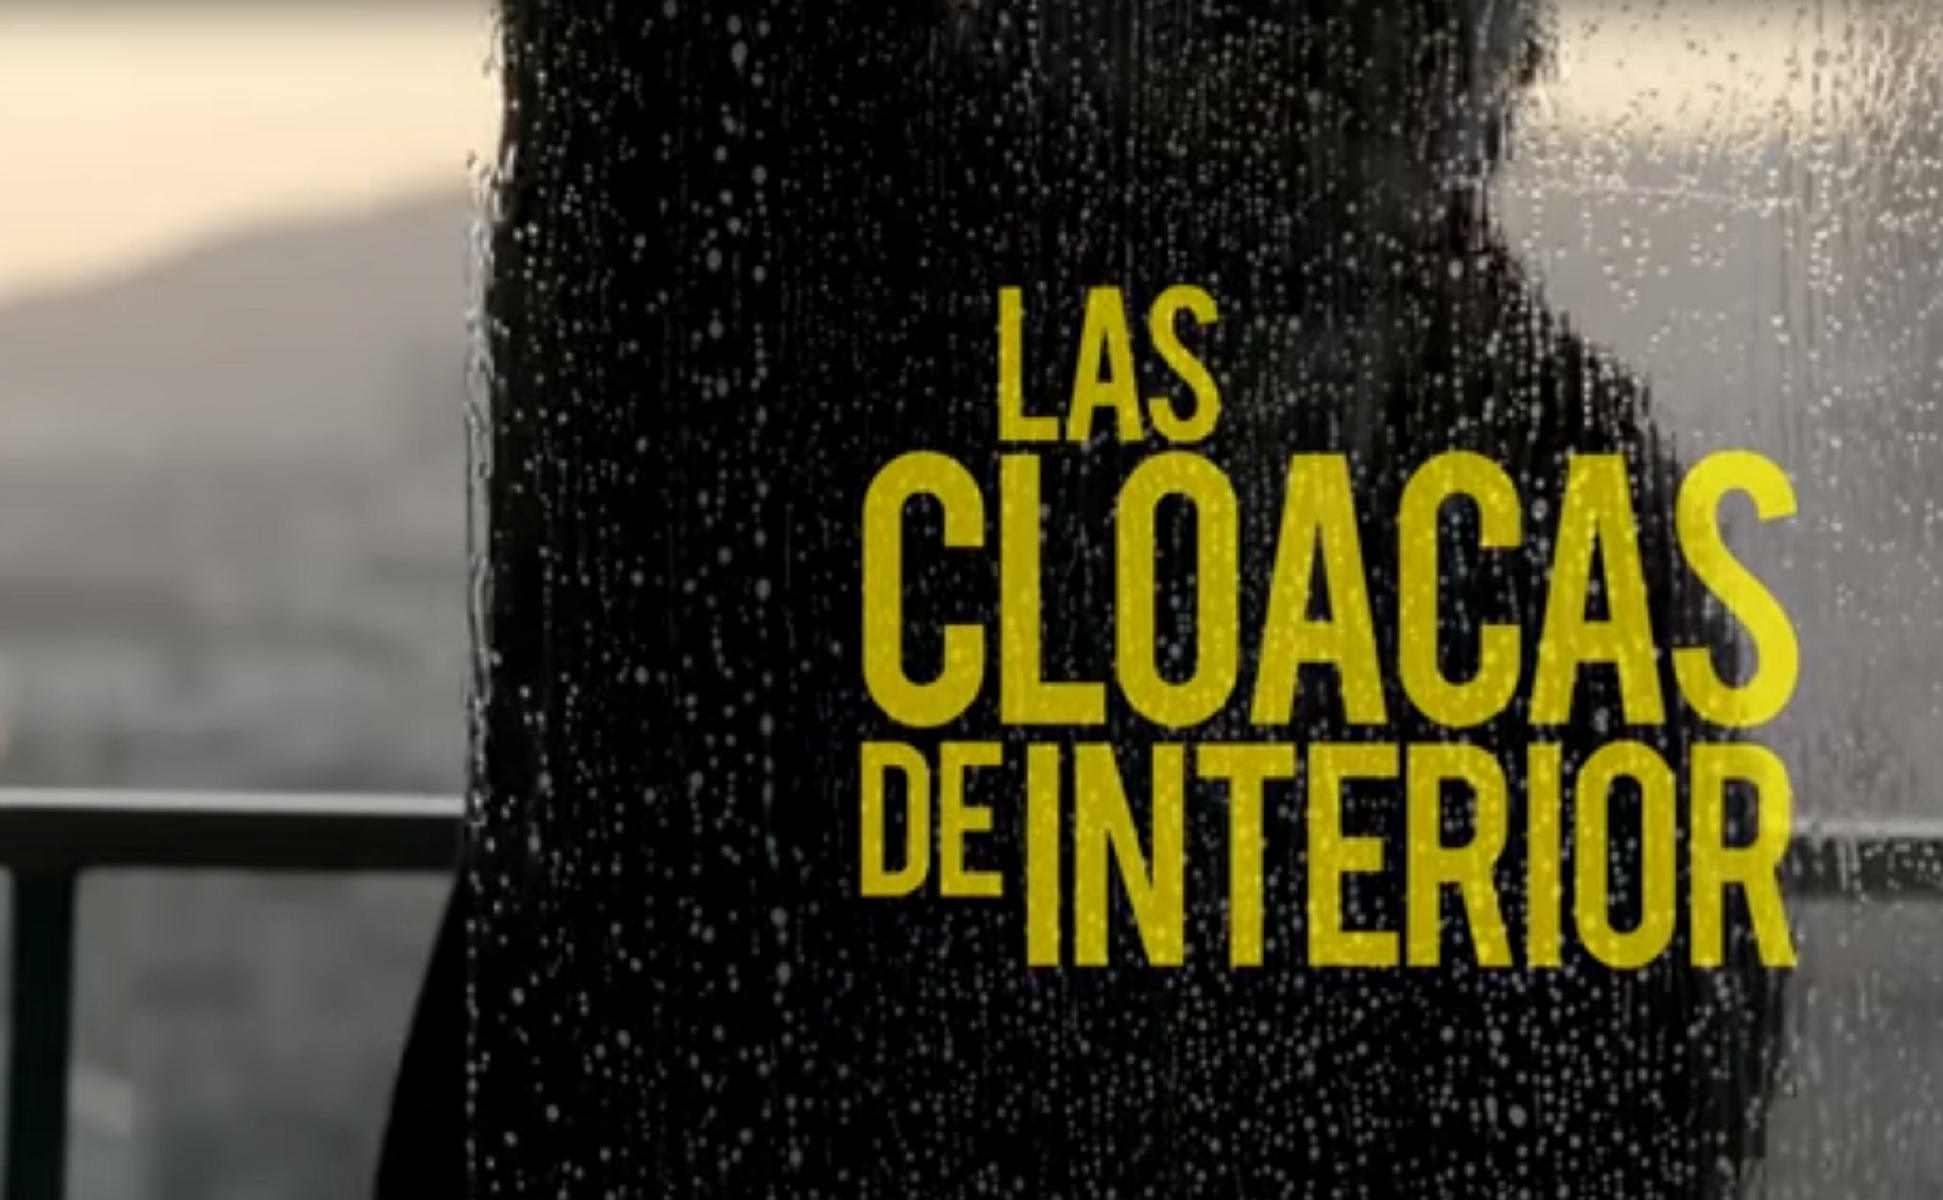 TV3 emet ‘Las Cloacas de Interior’ davant la censura als canals espanyols